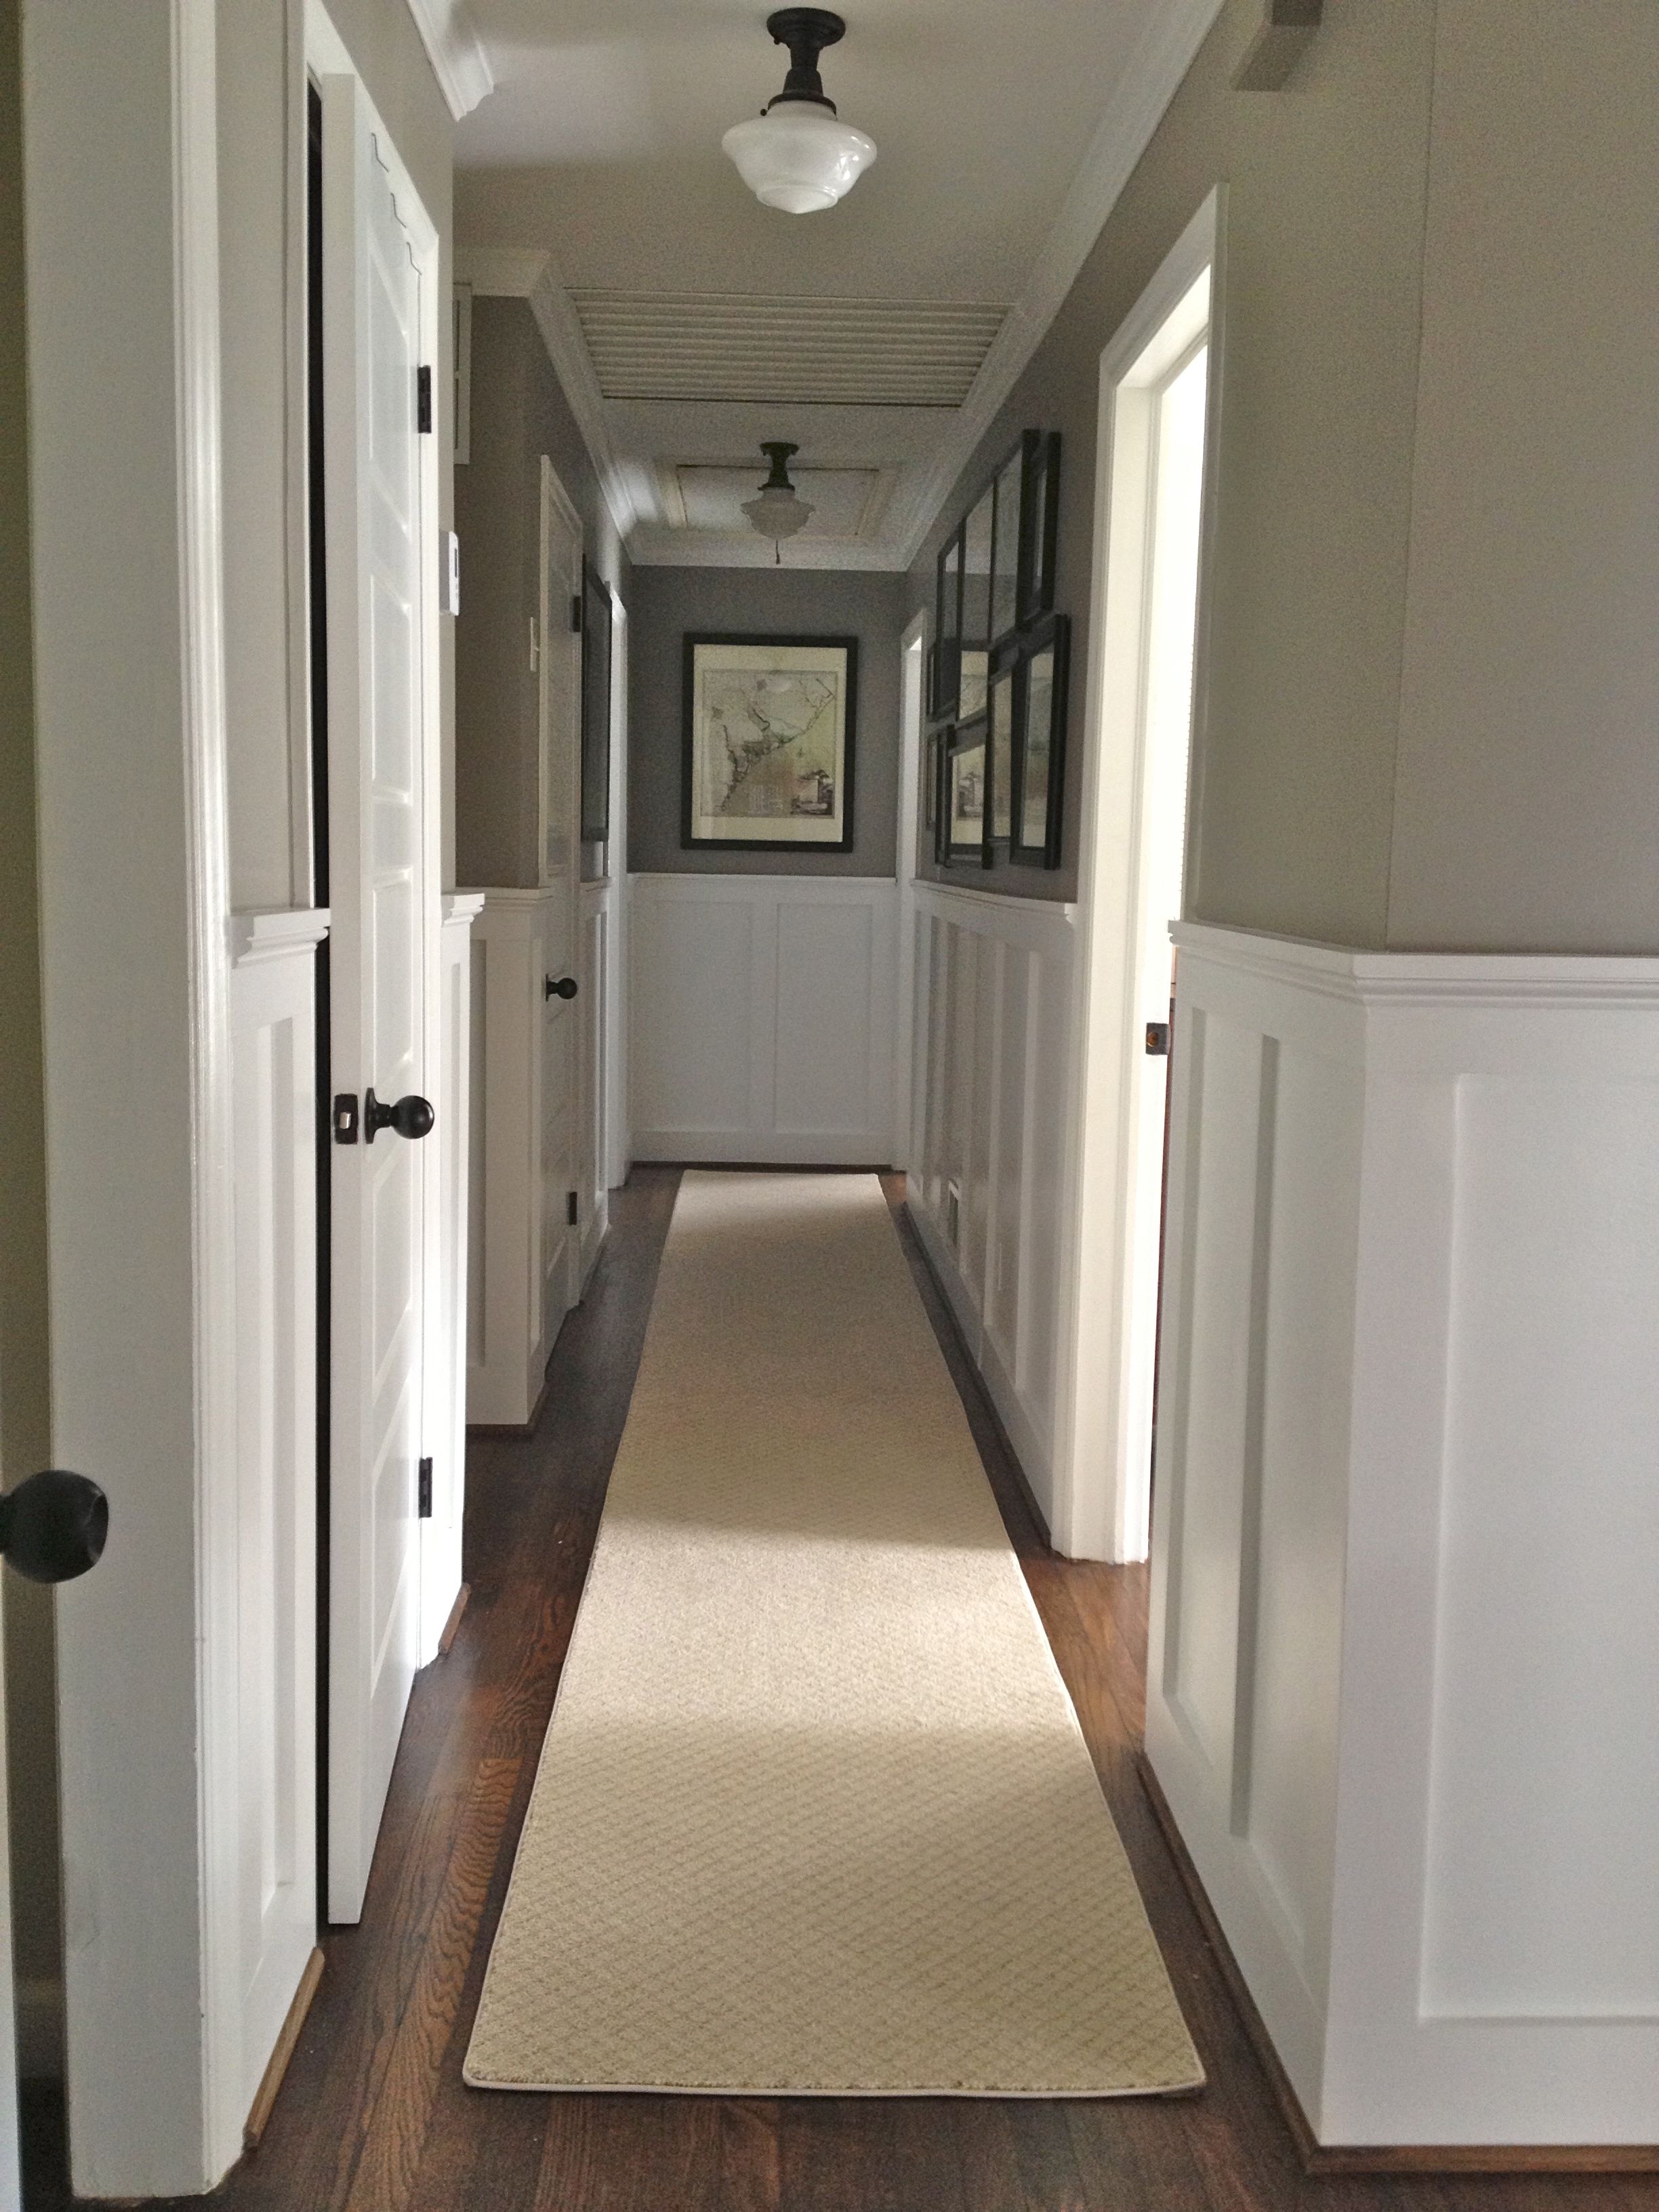 Flooring Runners Hallway Carpet Rug Runners Hallway Runners Regarding Hallway Rug Runners (View 2 of 20)